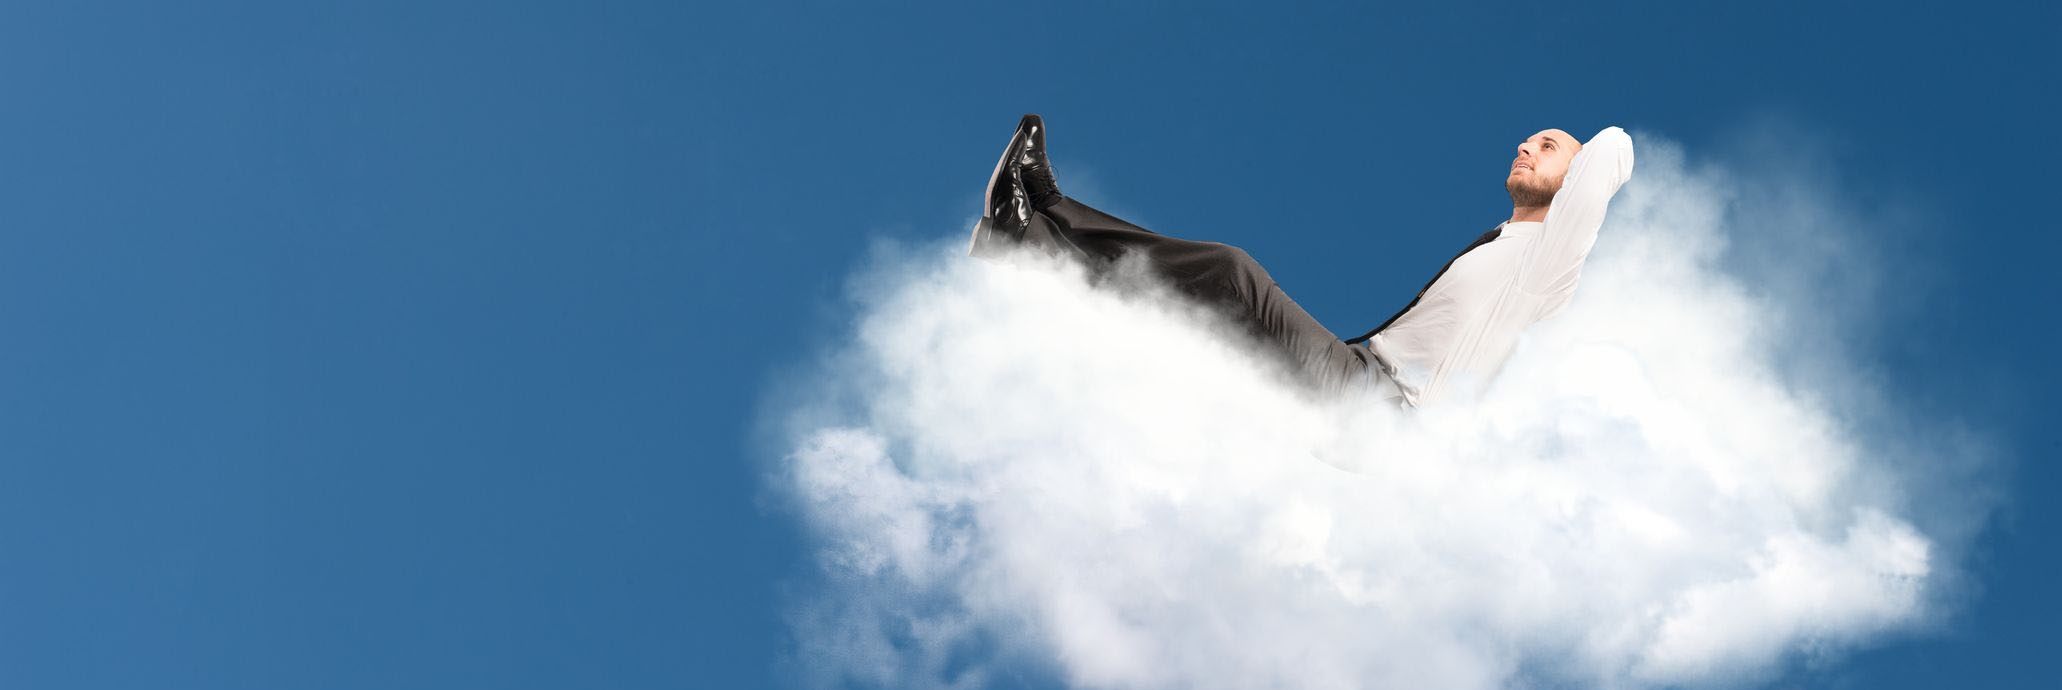 Cloud Access Security Broker: Mit CASB sicher in die Wolke